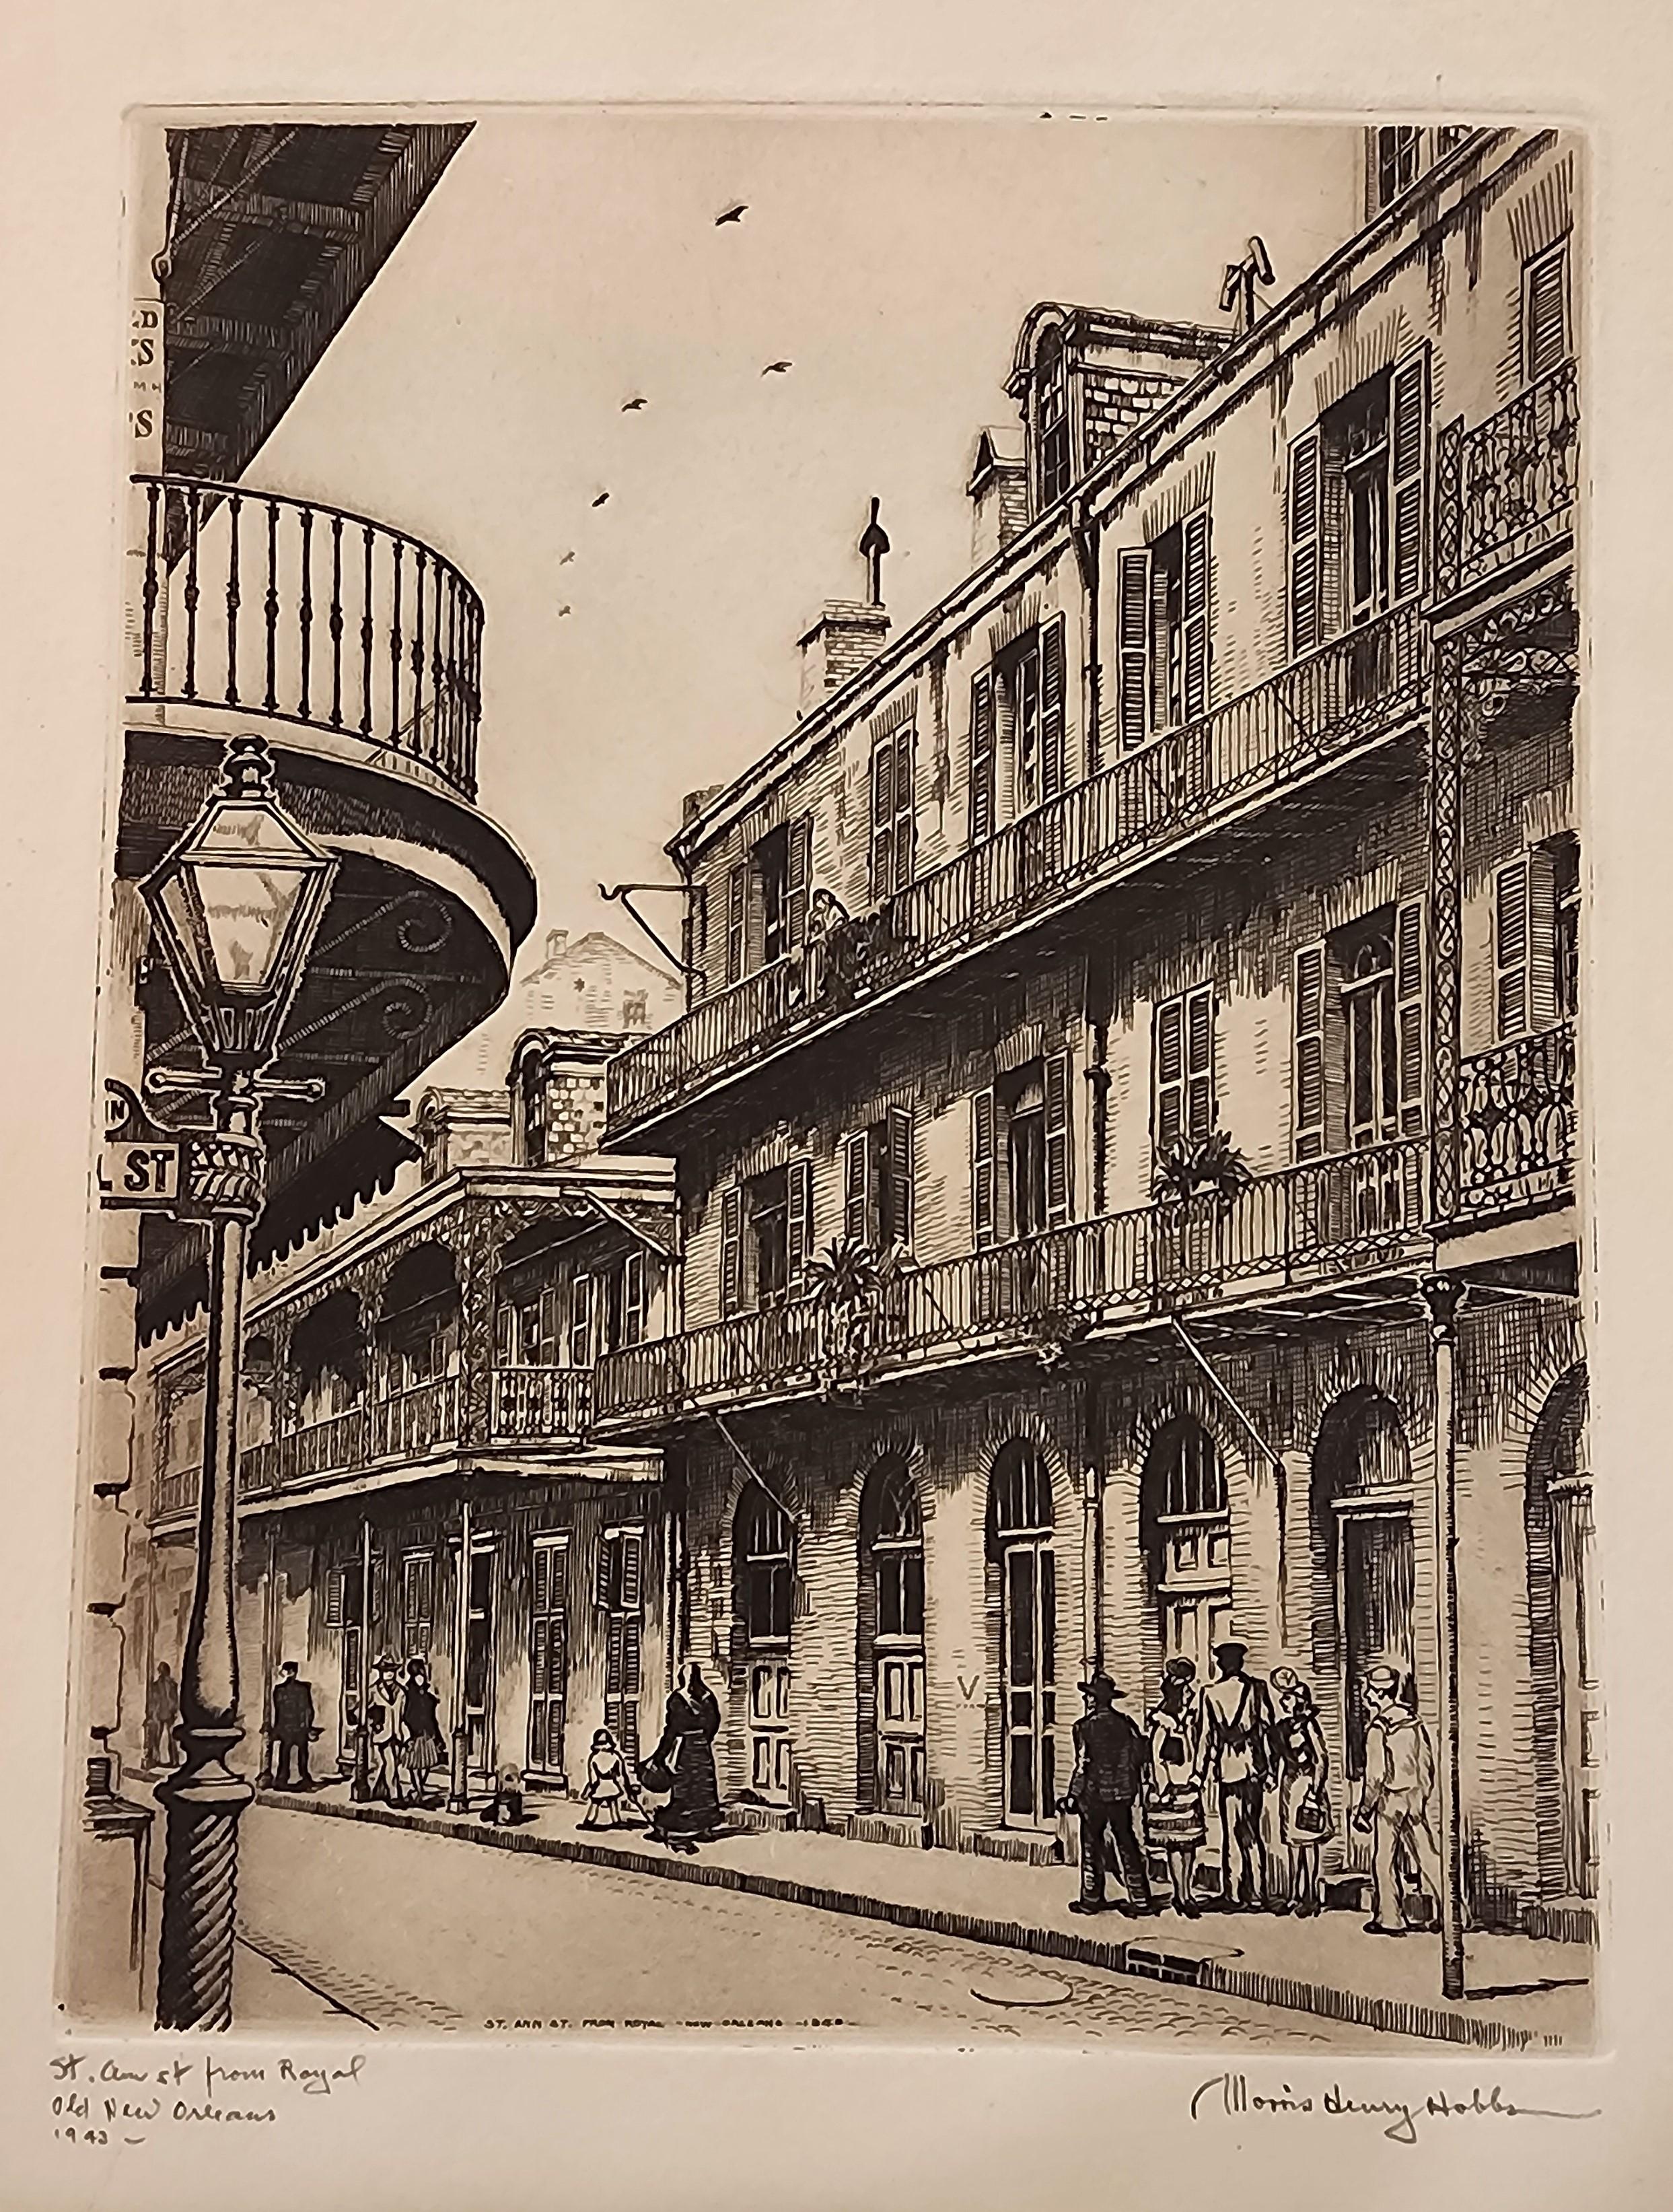 St. Ann St. von Royal, Old New Orleans, St. Ann St. – Print von Morris Henry Hobbs